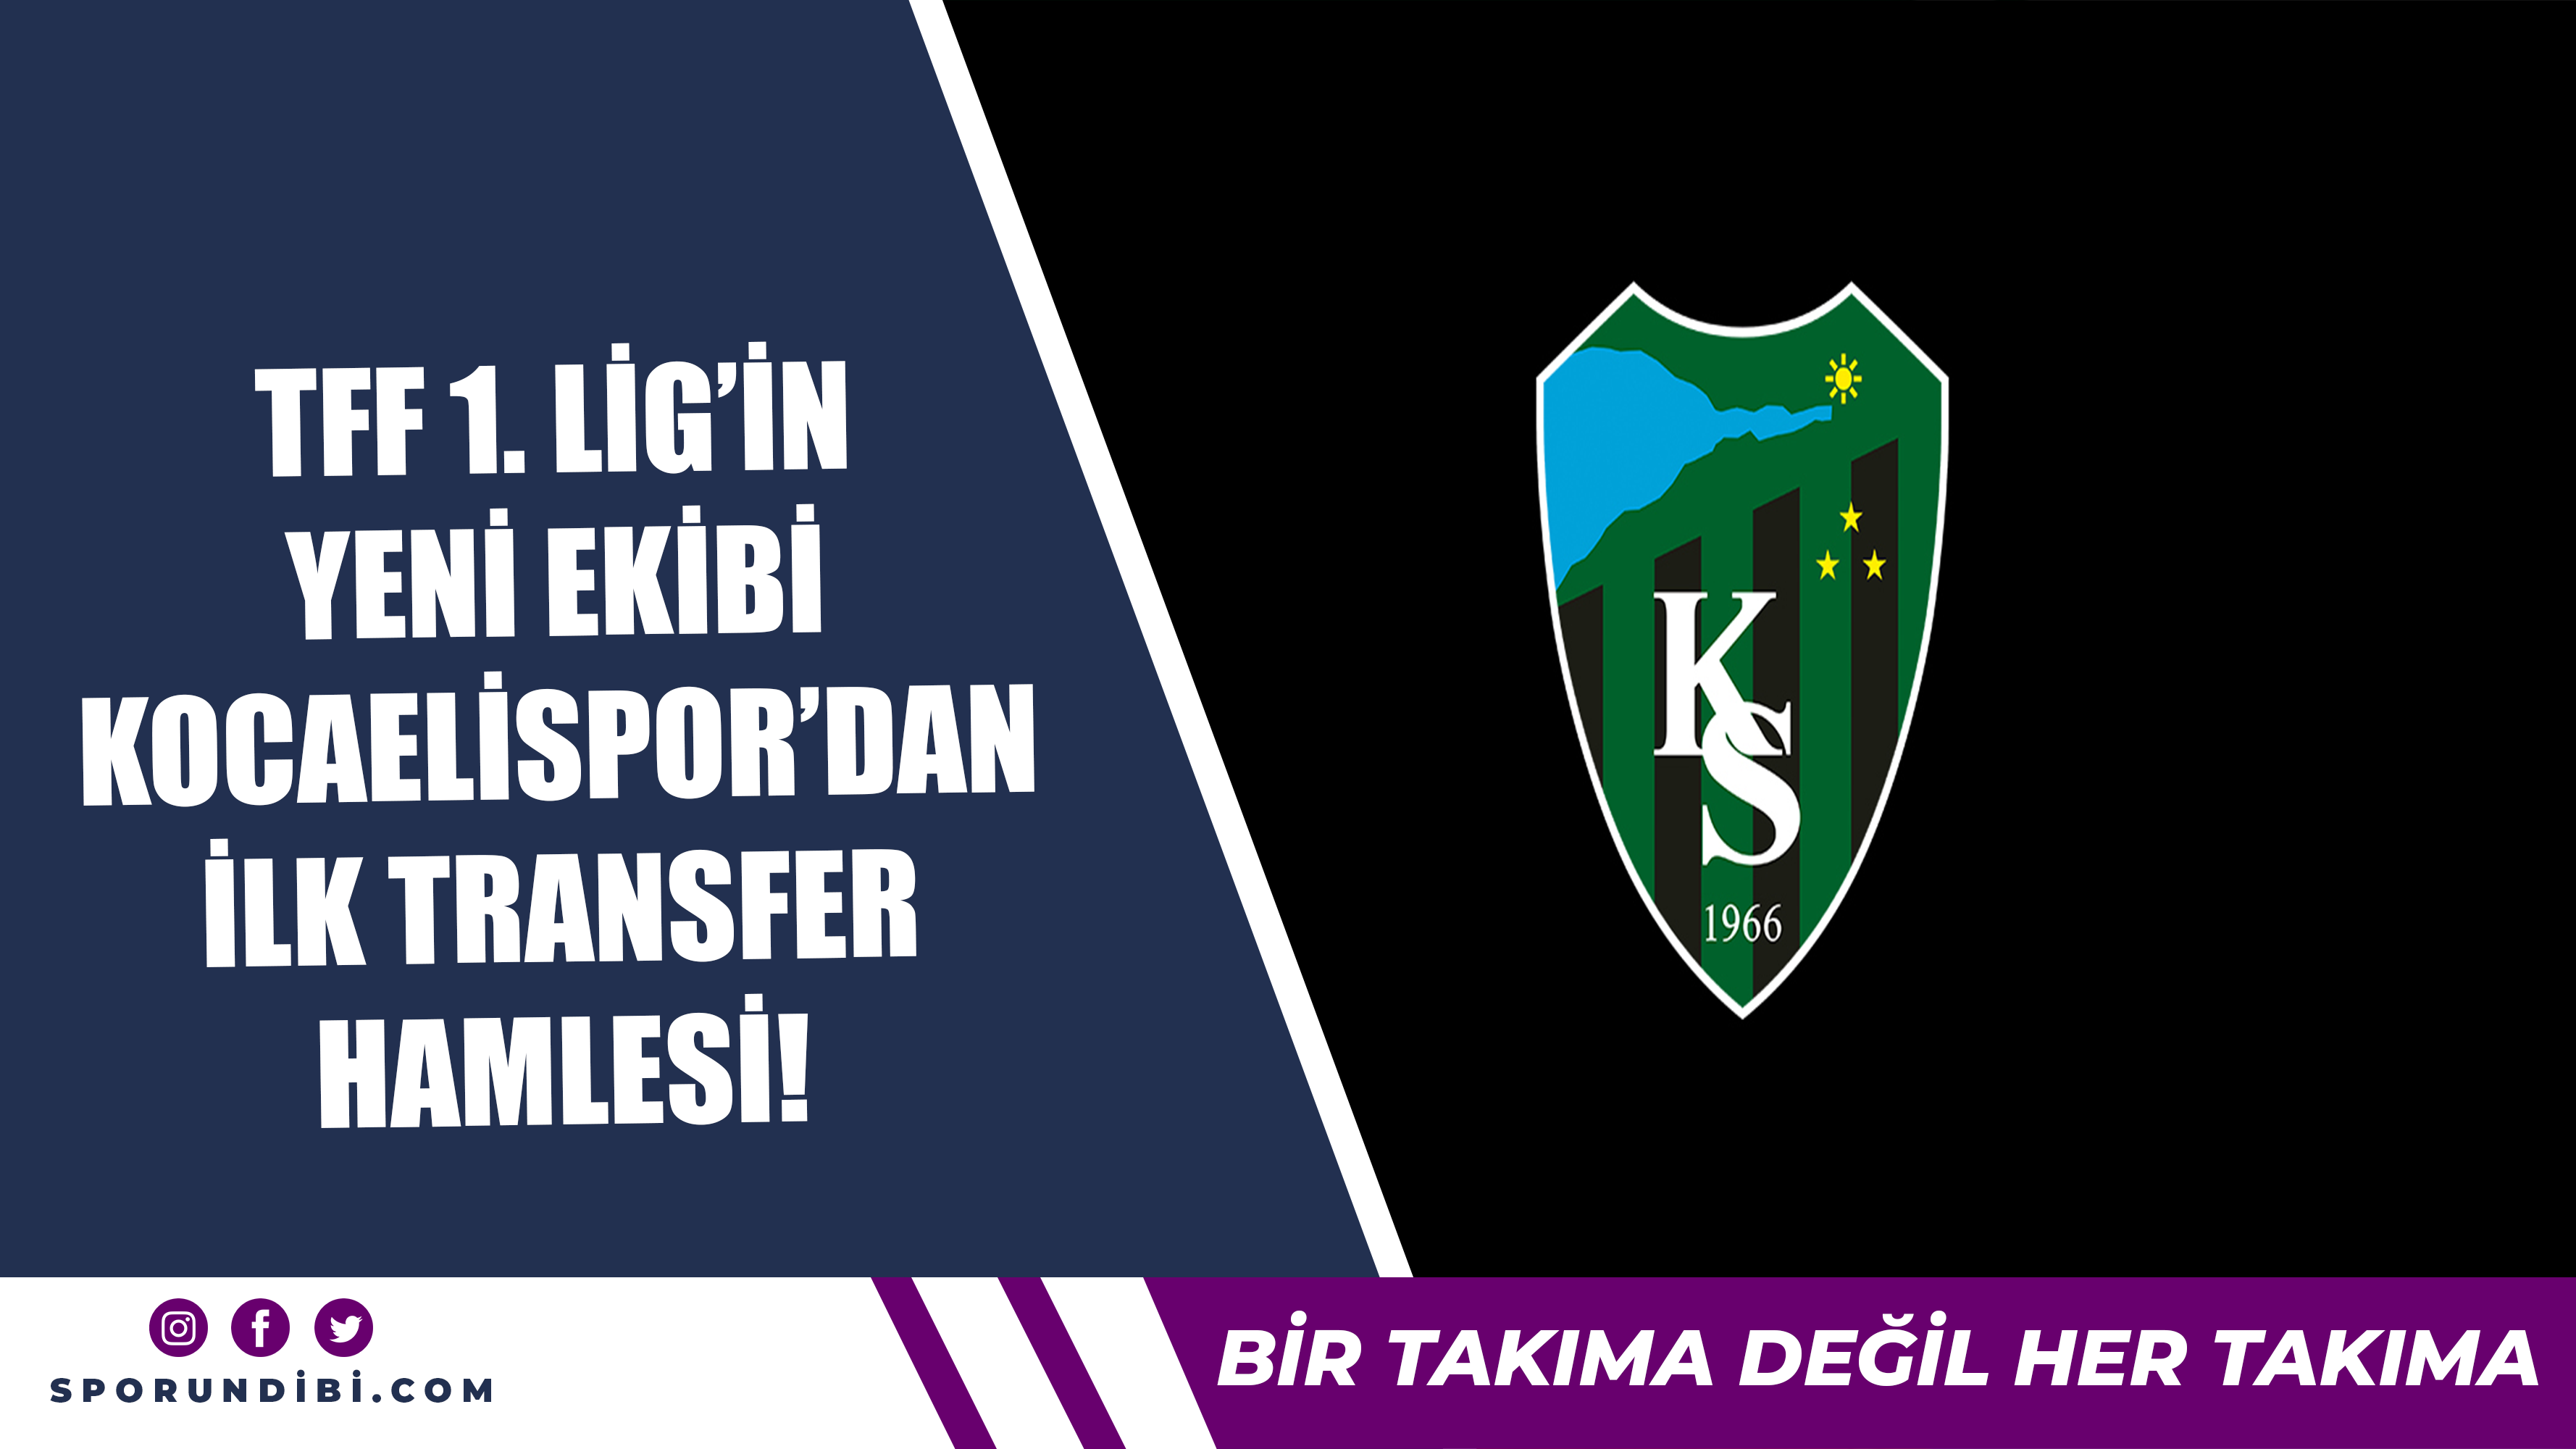 TFF 1. Lig'in yeni ekibi Kocaelispor'dan ilk transfer hamlesi!